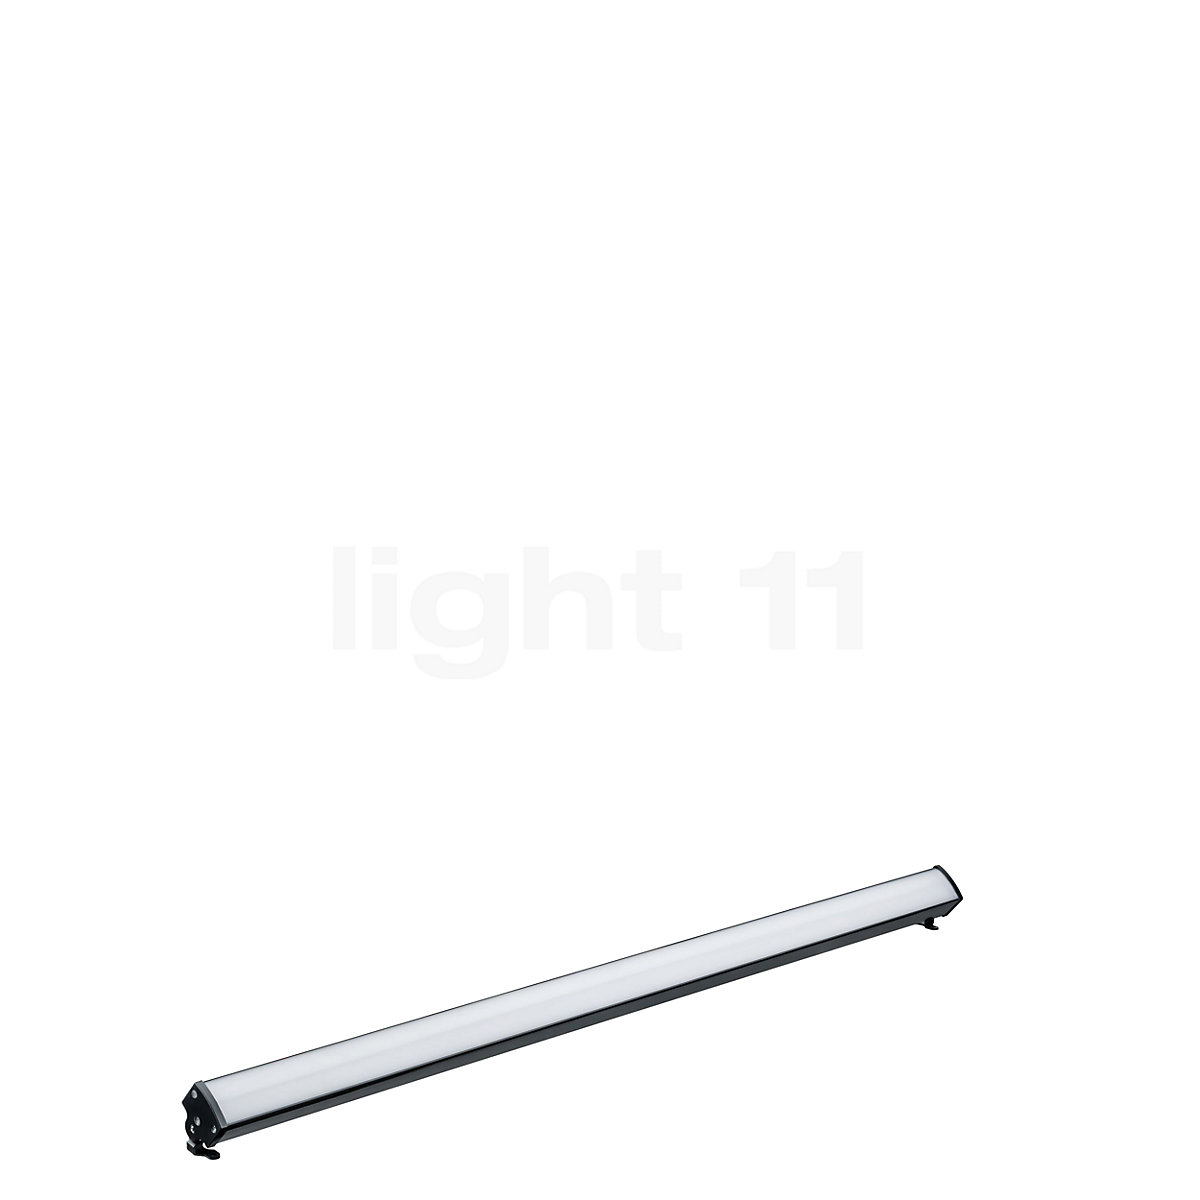 Buy Paulmann Plug & Shine Light Bar Floor Light LED at